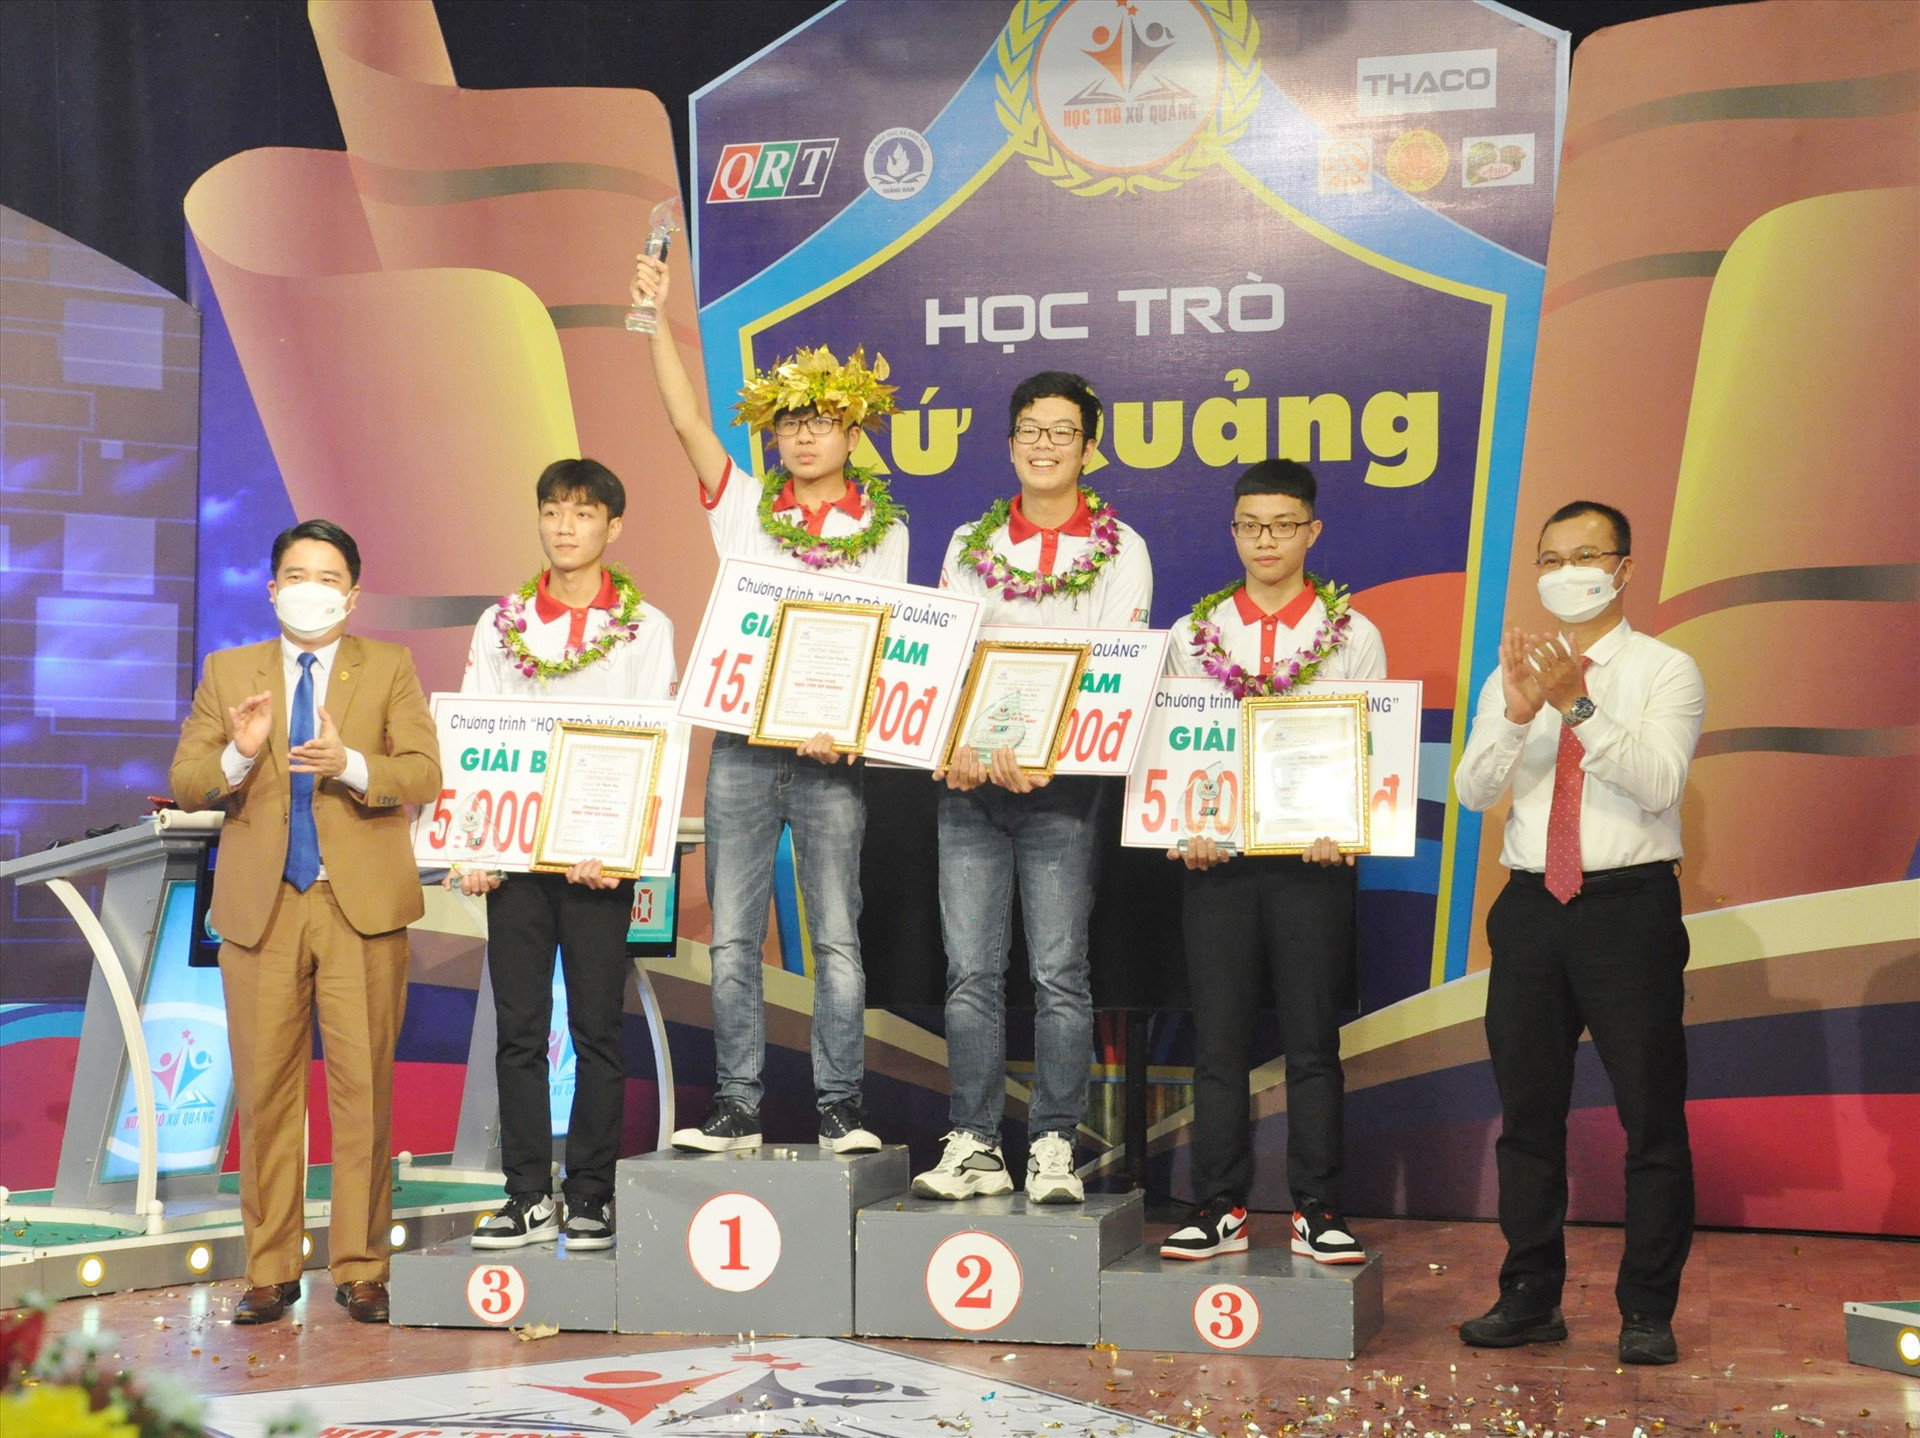 Phó Chủ tịch UBND tỉnh Trần Văn Tân và nhà tài trợ trao thưởng cho các thí sinh sau chung kết. Ảnh: X.P